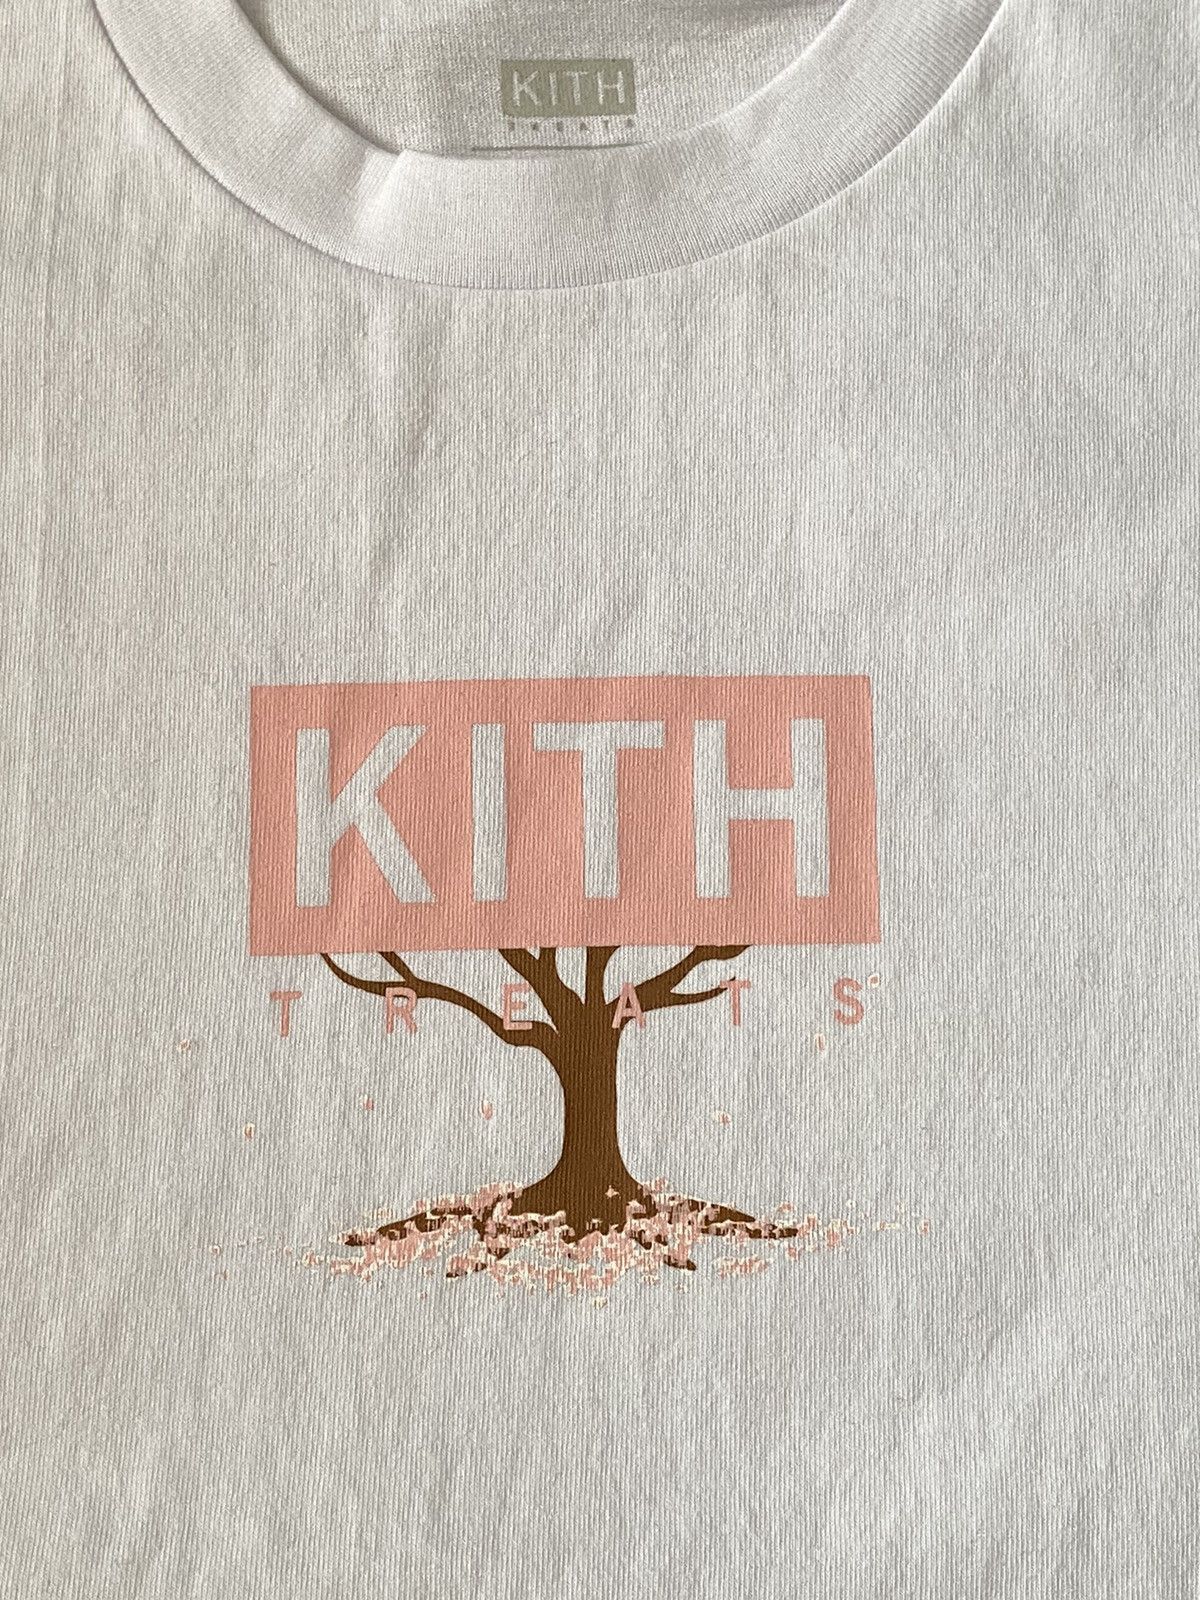 Kith KITH TREATS TOKYO THE HANAMI TEE WHITE - SS19 | Grailed